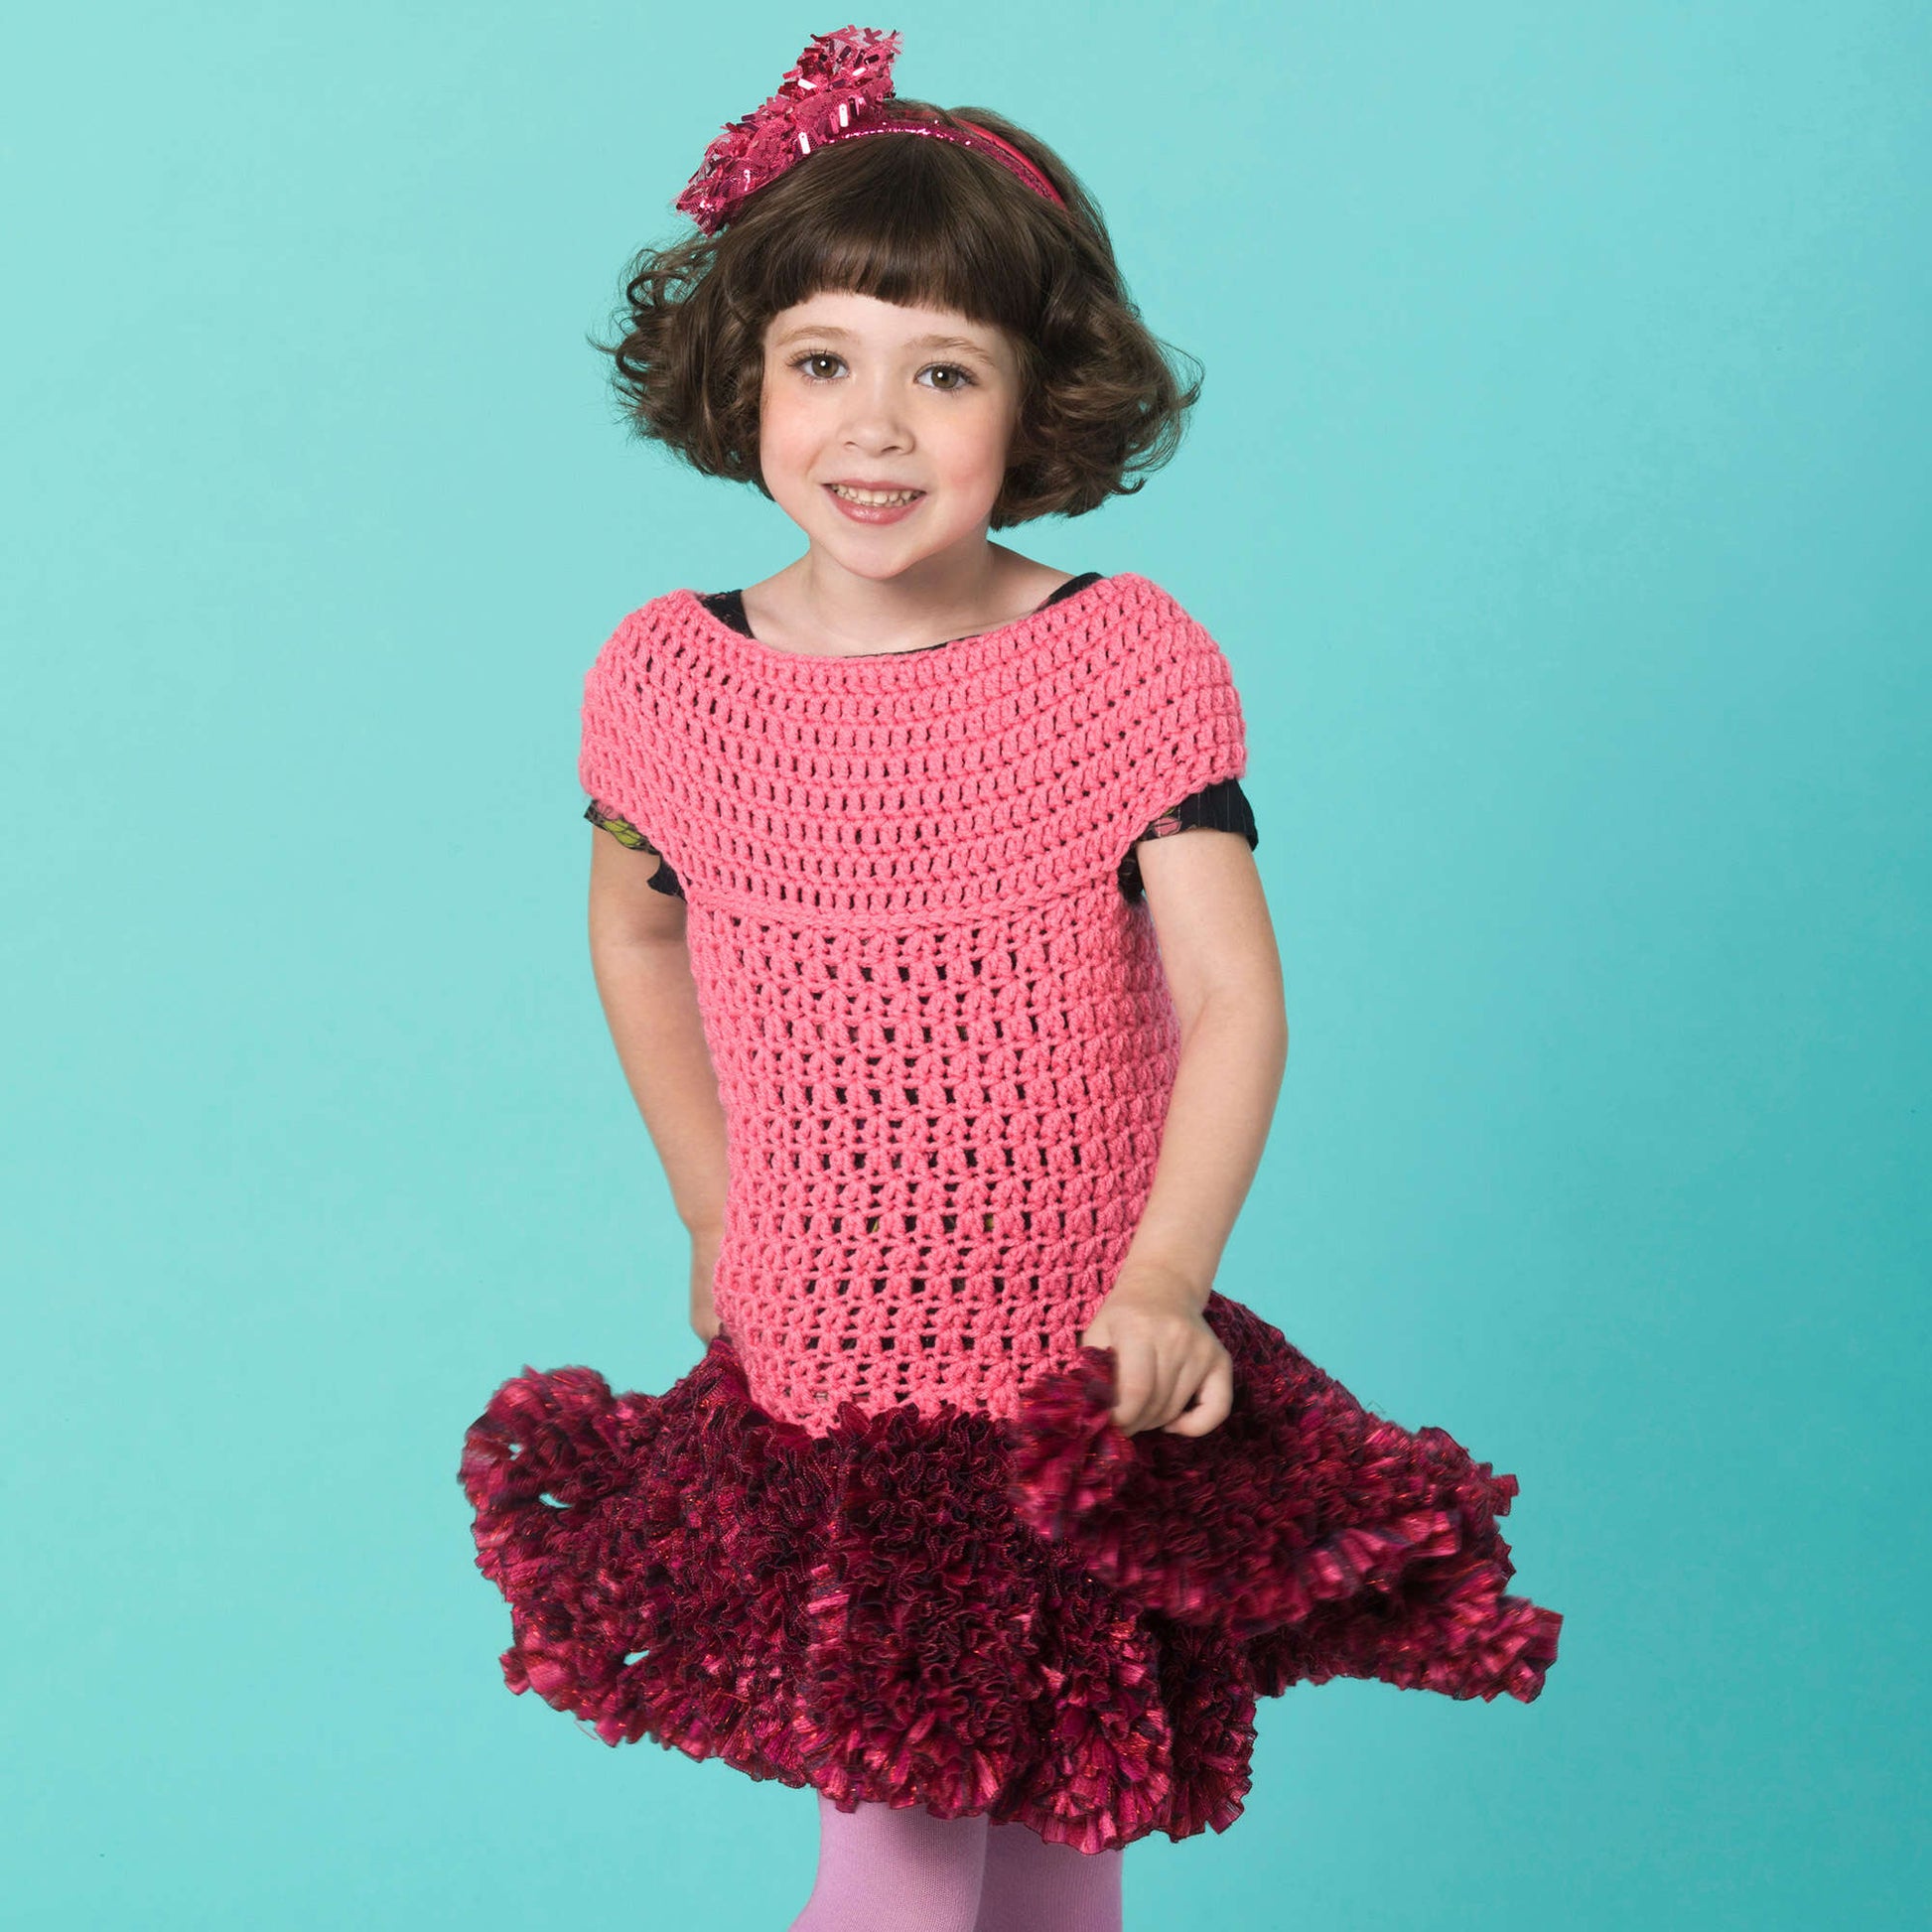 Free Red Heart Crochet Twirl Party Dress Pattern